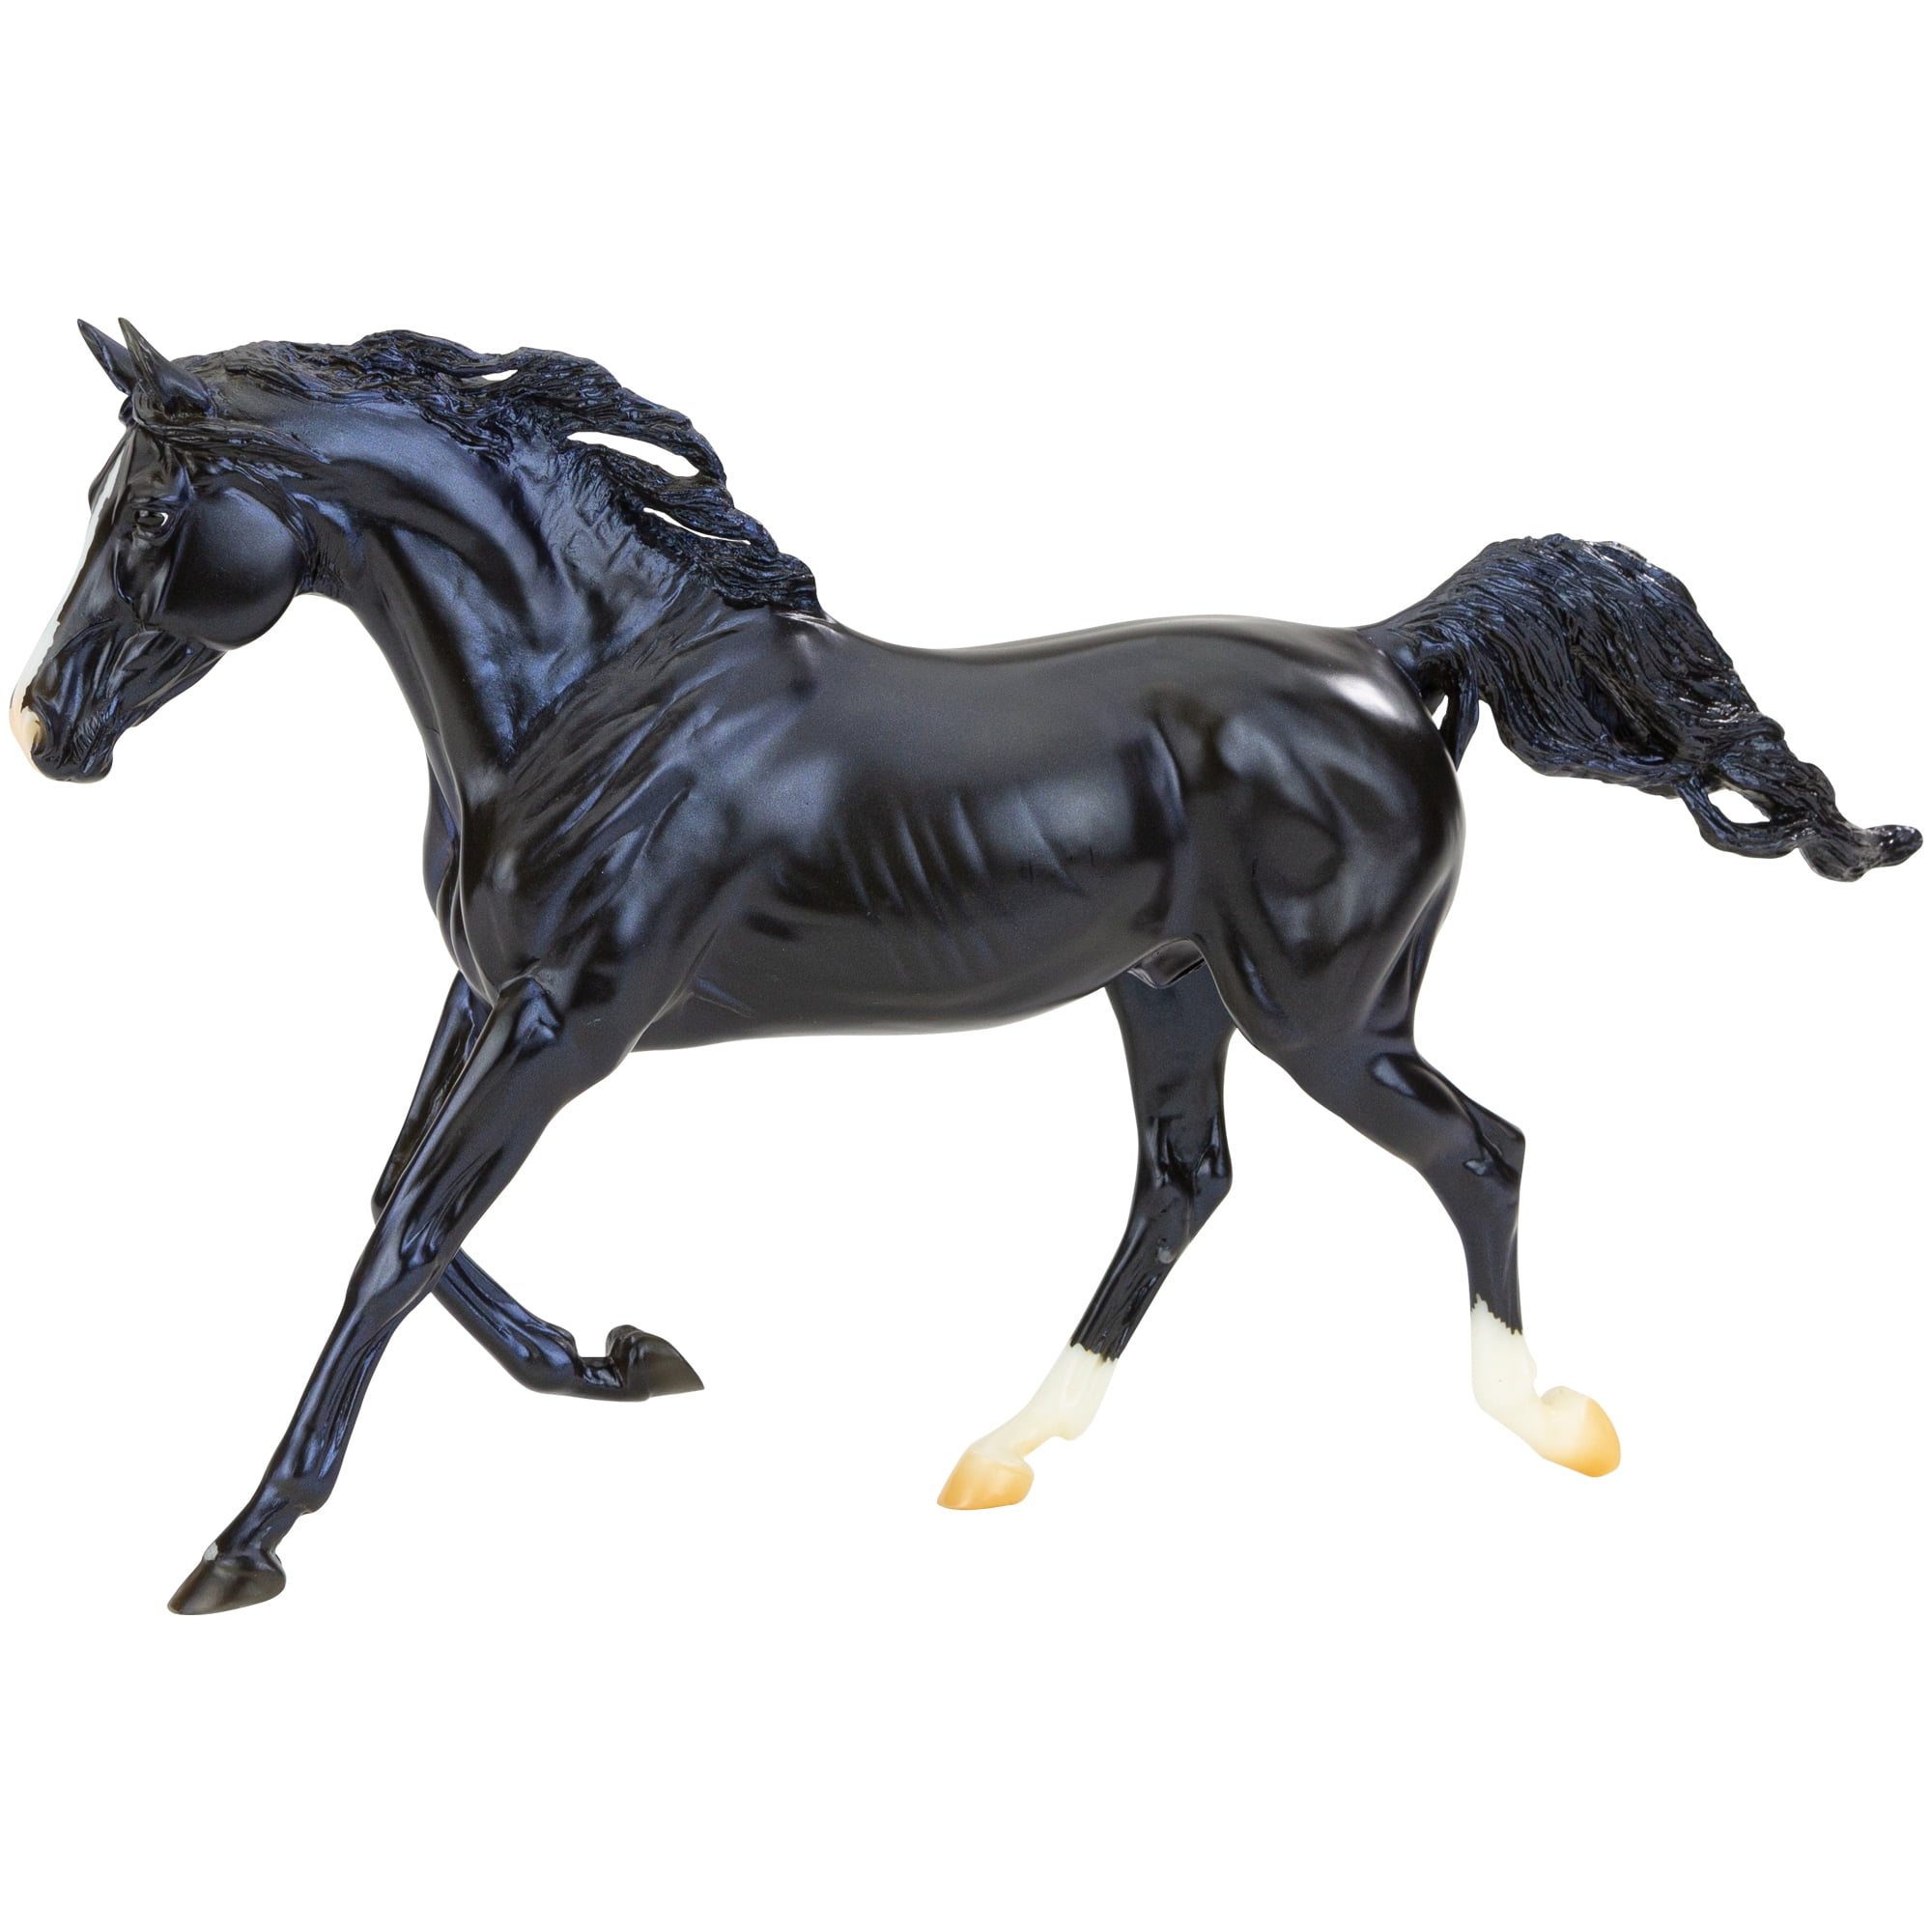 Breyer Freiheit Serie 1:12 Maßstab Modell Pferd Schwarz Pinto Aufzucht MUSTANG 